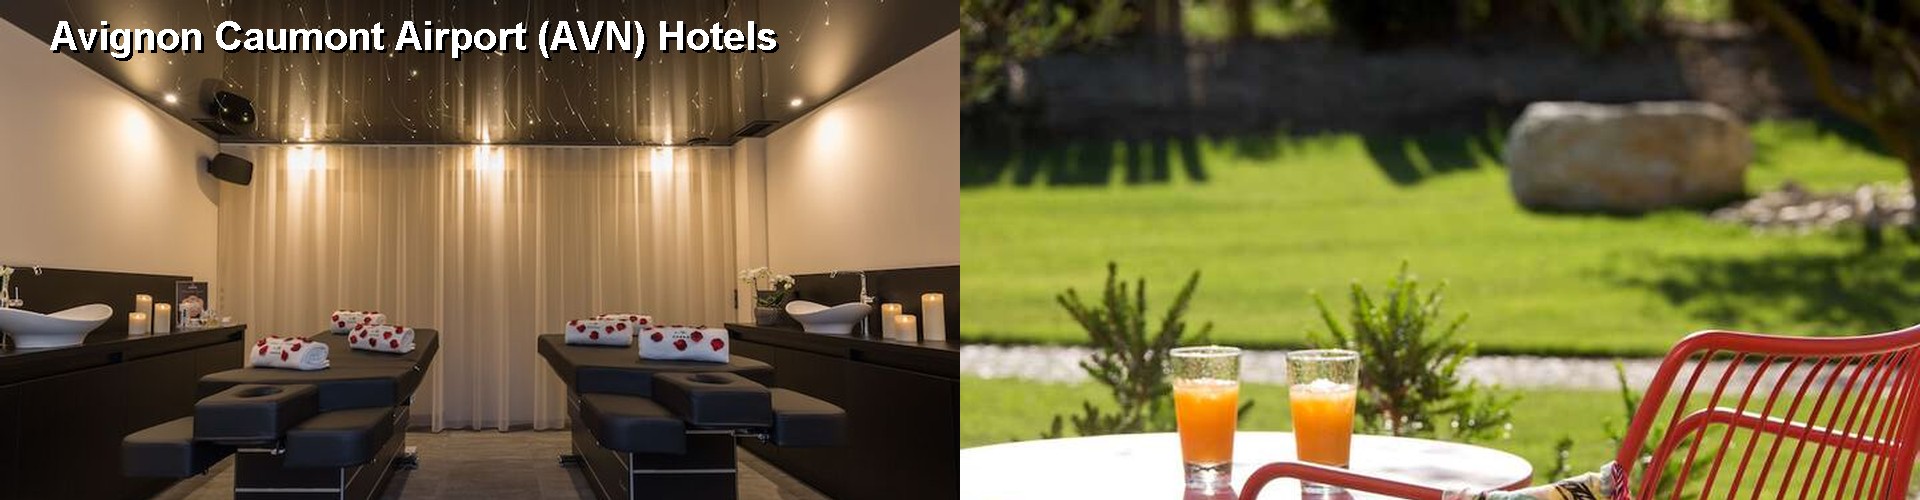 5 Best Hotels near Avignon Caumont Airport (AVN)